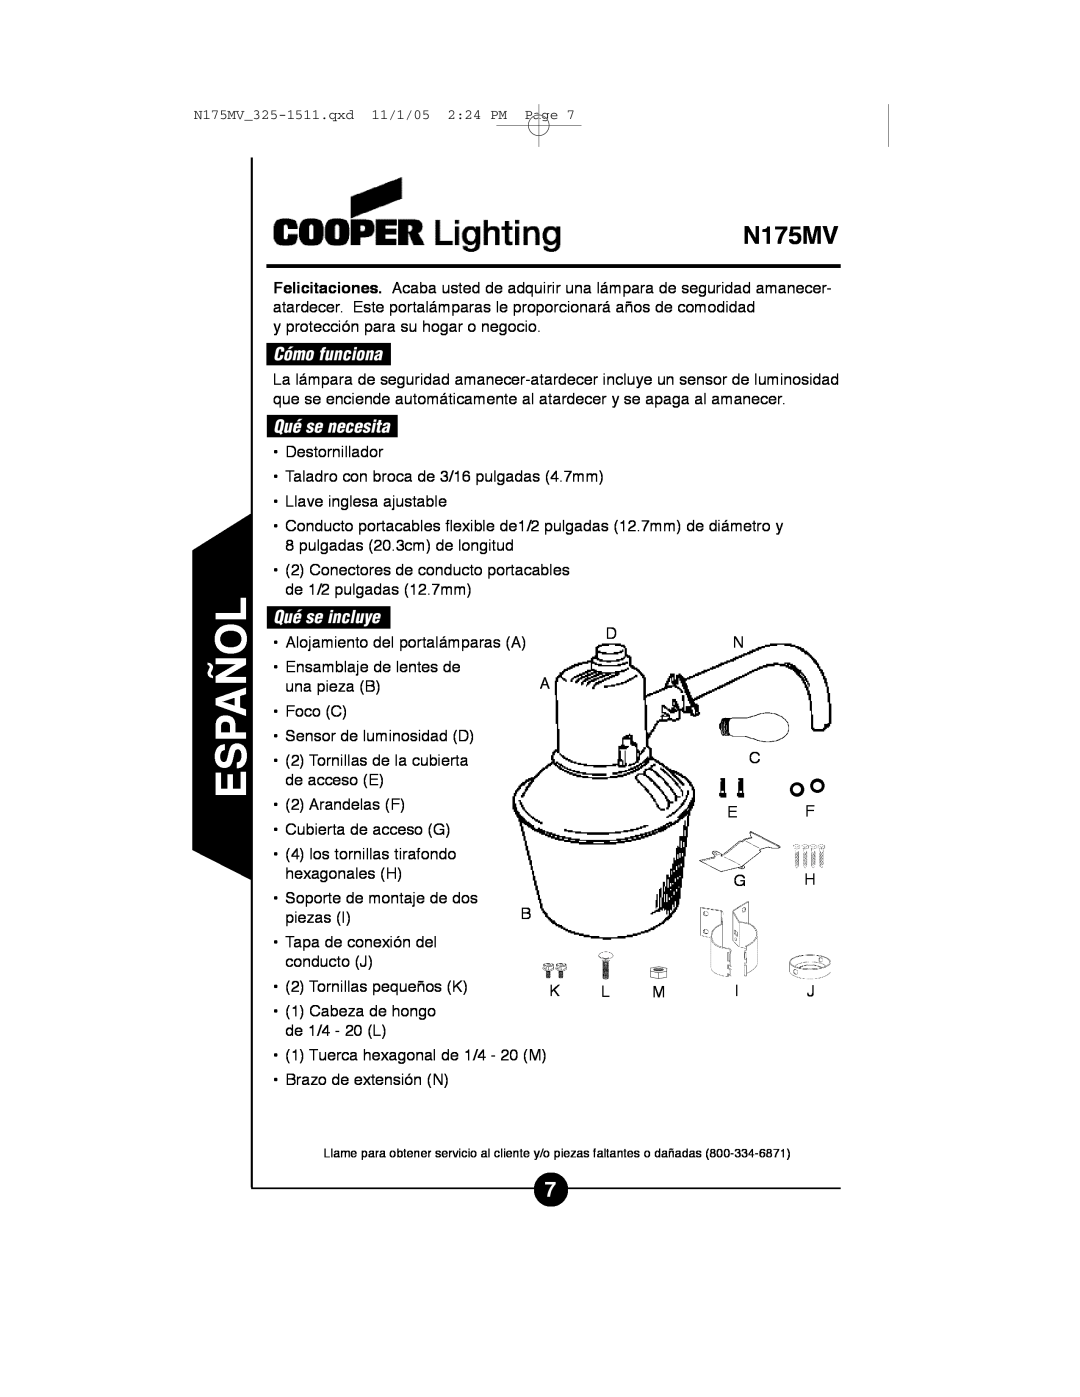 Cooper Lighting N175MV instruction manual Cómo funciona, Qué se necesita, Qué se incluye 